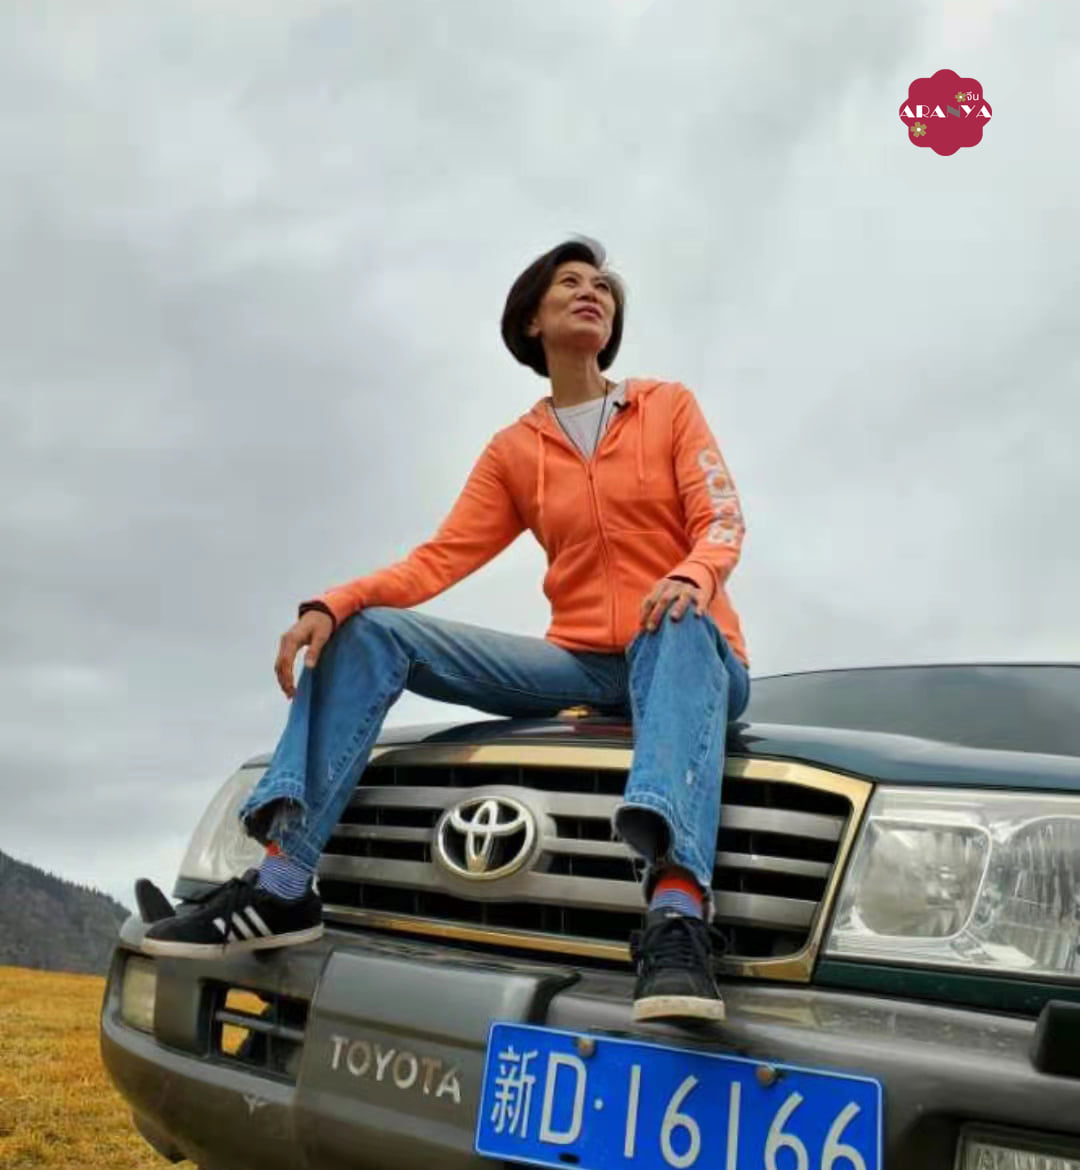 #ทุ่งหญ้าเนินสูง #ซินเจียง #ขุยถุน 
~1~
จากเมืองขุยถุน奎屯ของเขตซินเจียง新疆 ขับรถกว…